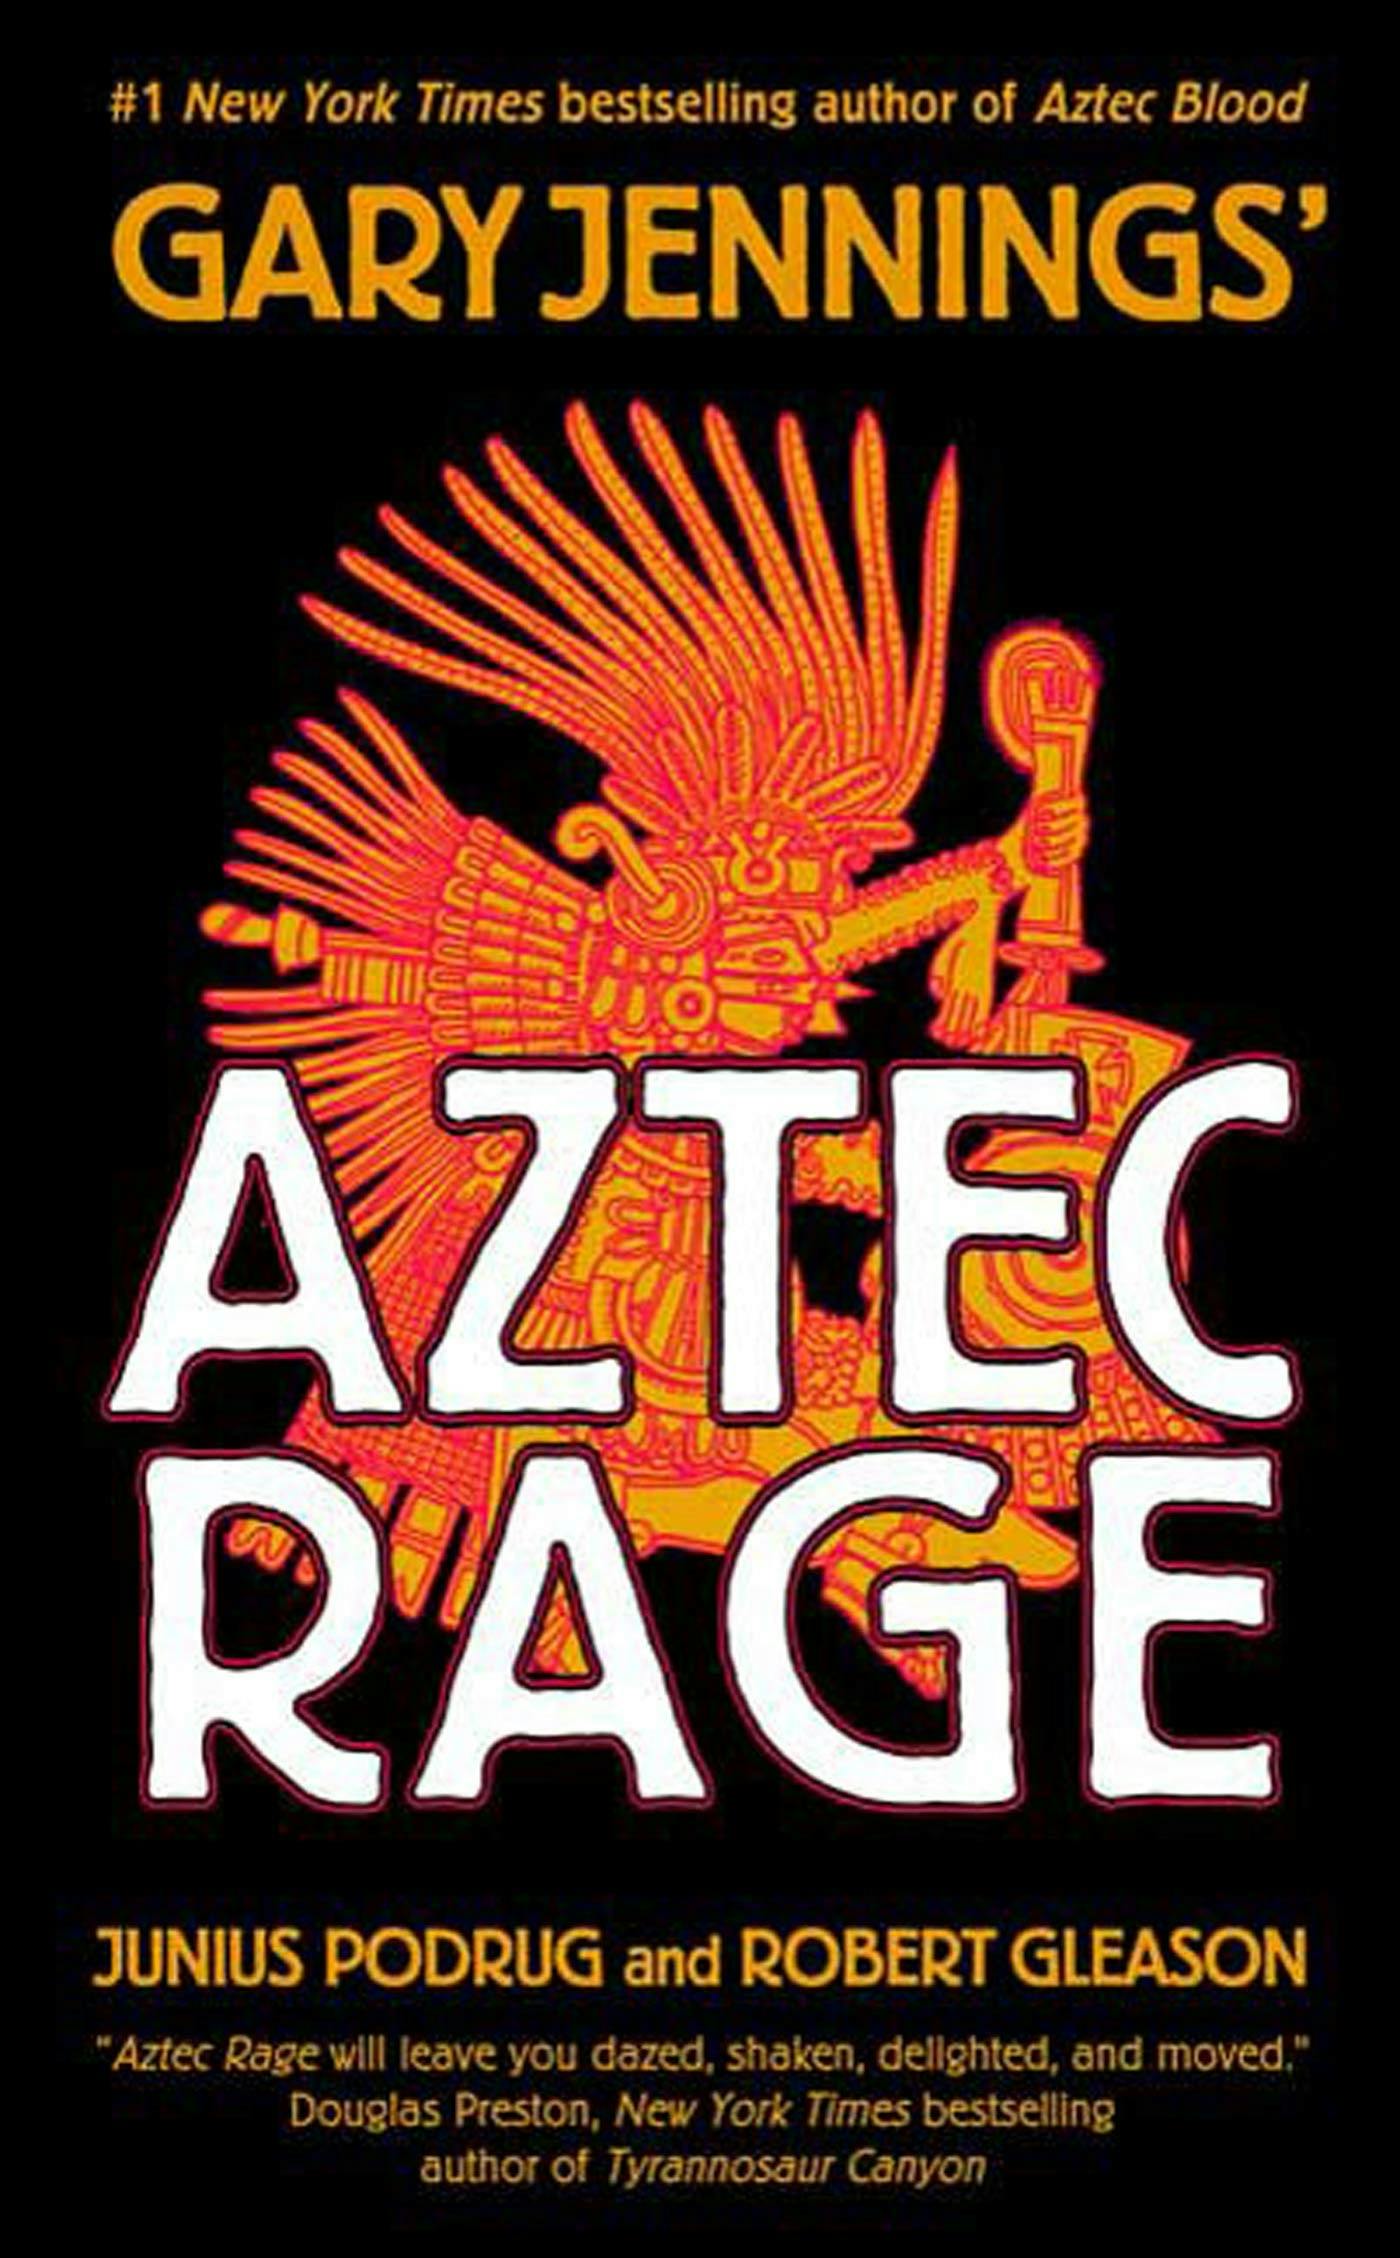 Image of Aztec Rage